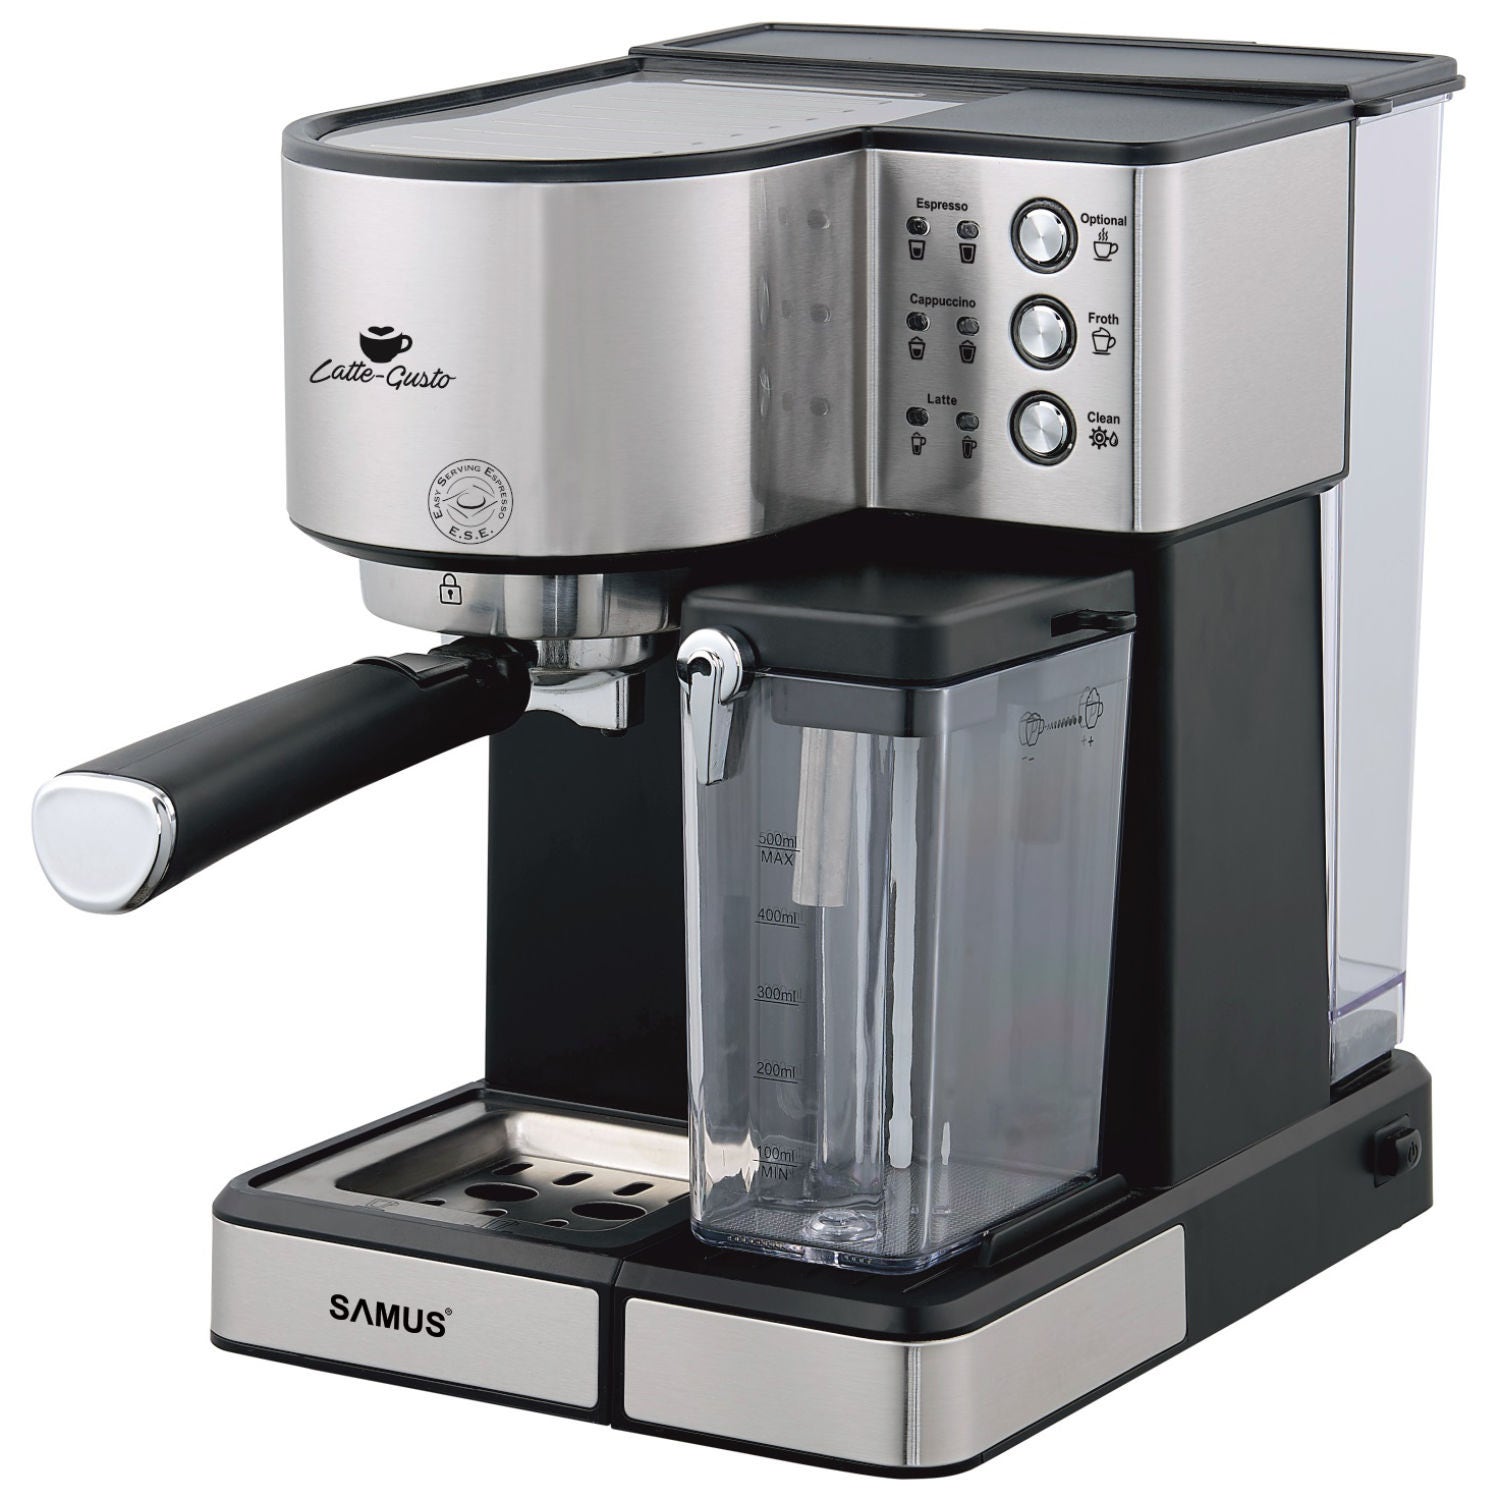 Espressor cafea Samus Latte Gusto, cafea macinata, 20 bar, 1350 W, rezervor apa 1.8 litri, rezervor lapte 0.5 litri, functie de curatare, filtru detasabil din inox, argintiu + negru